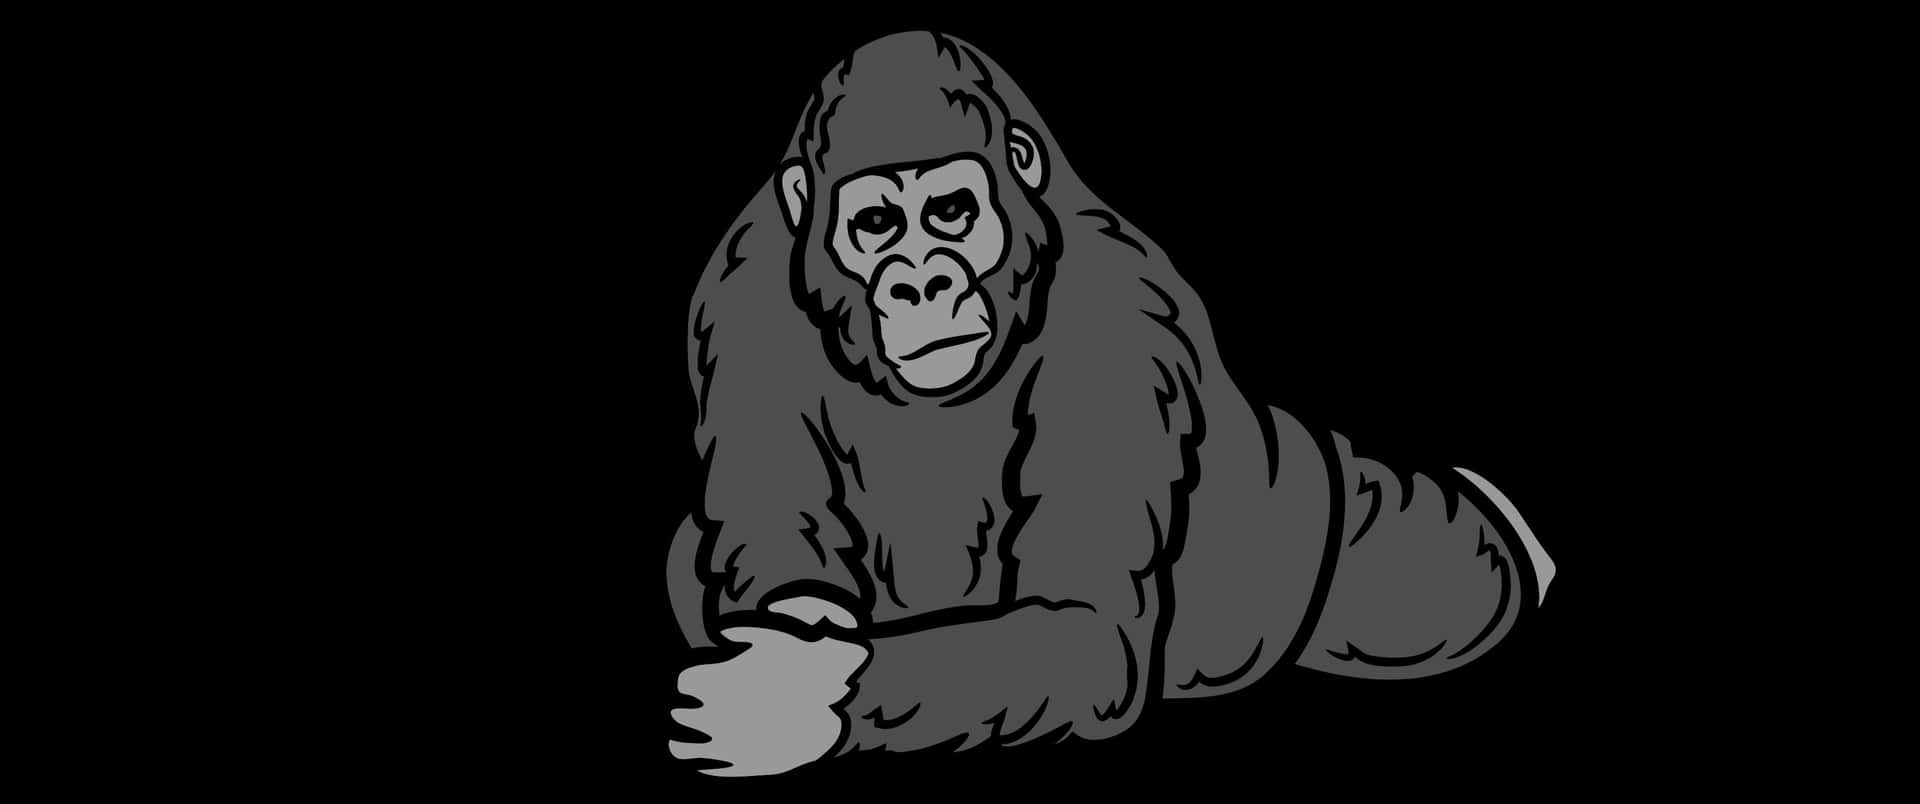 Fondode Dibujo De Un Gorila Animal En 3440x1440p